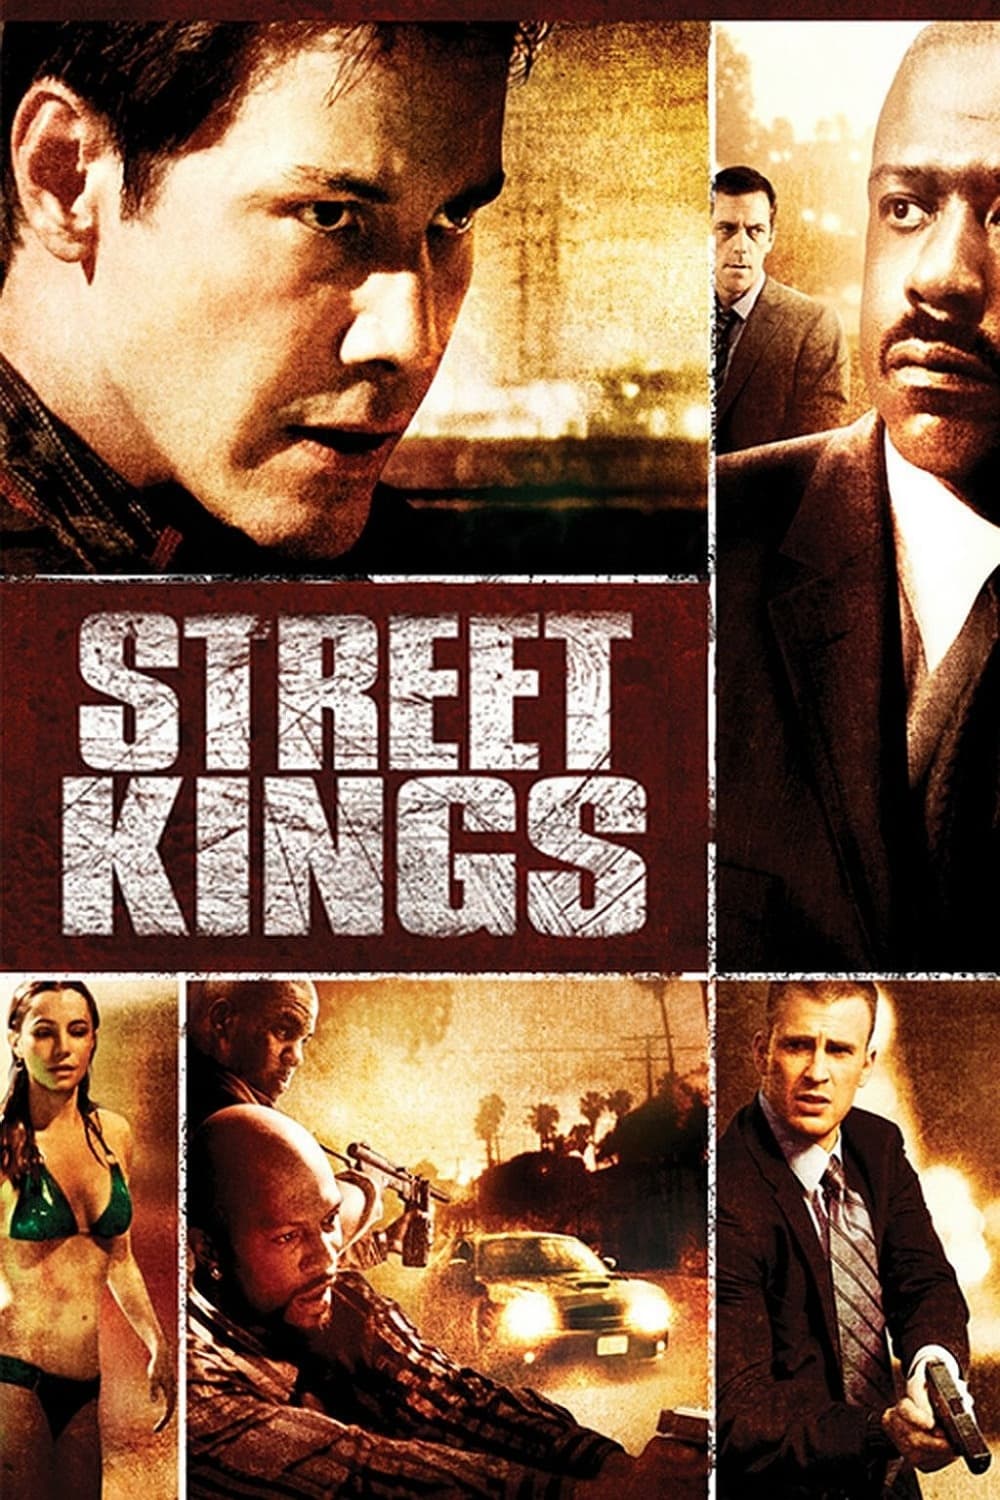 Street Kings (2008)